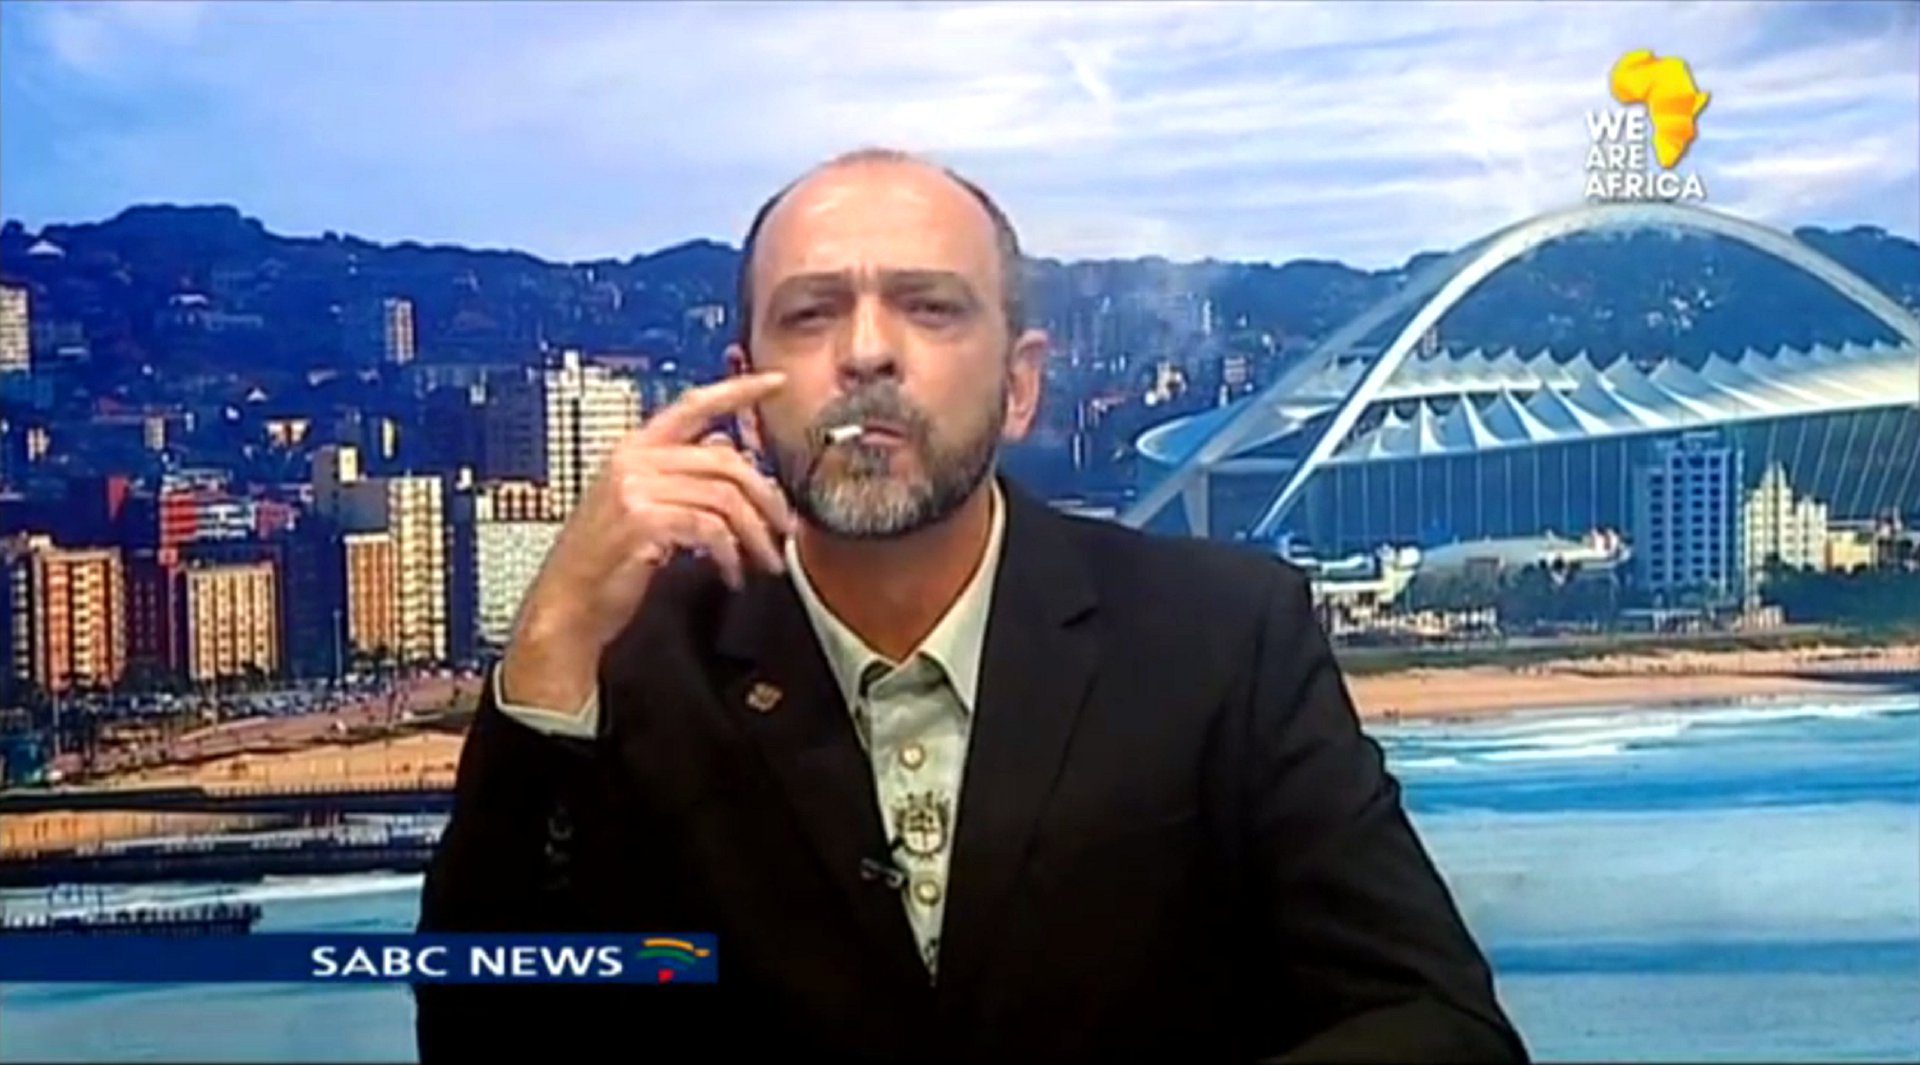 Sehr medienwirksam zündete sich Andre du Plessis, Leiter der südafrikanischen Cannabis Working Group, während eines live Interviews mit dem südafrikanischen Fernsehsenders (SABC Newsroom Show) eine tüte an.